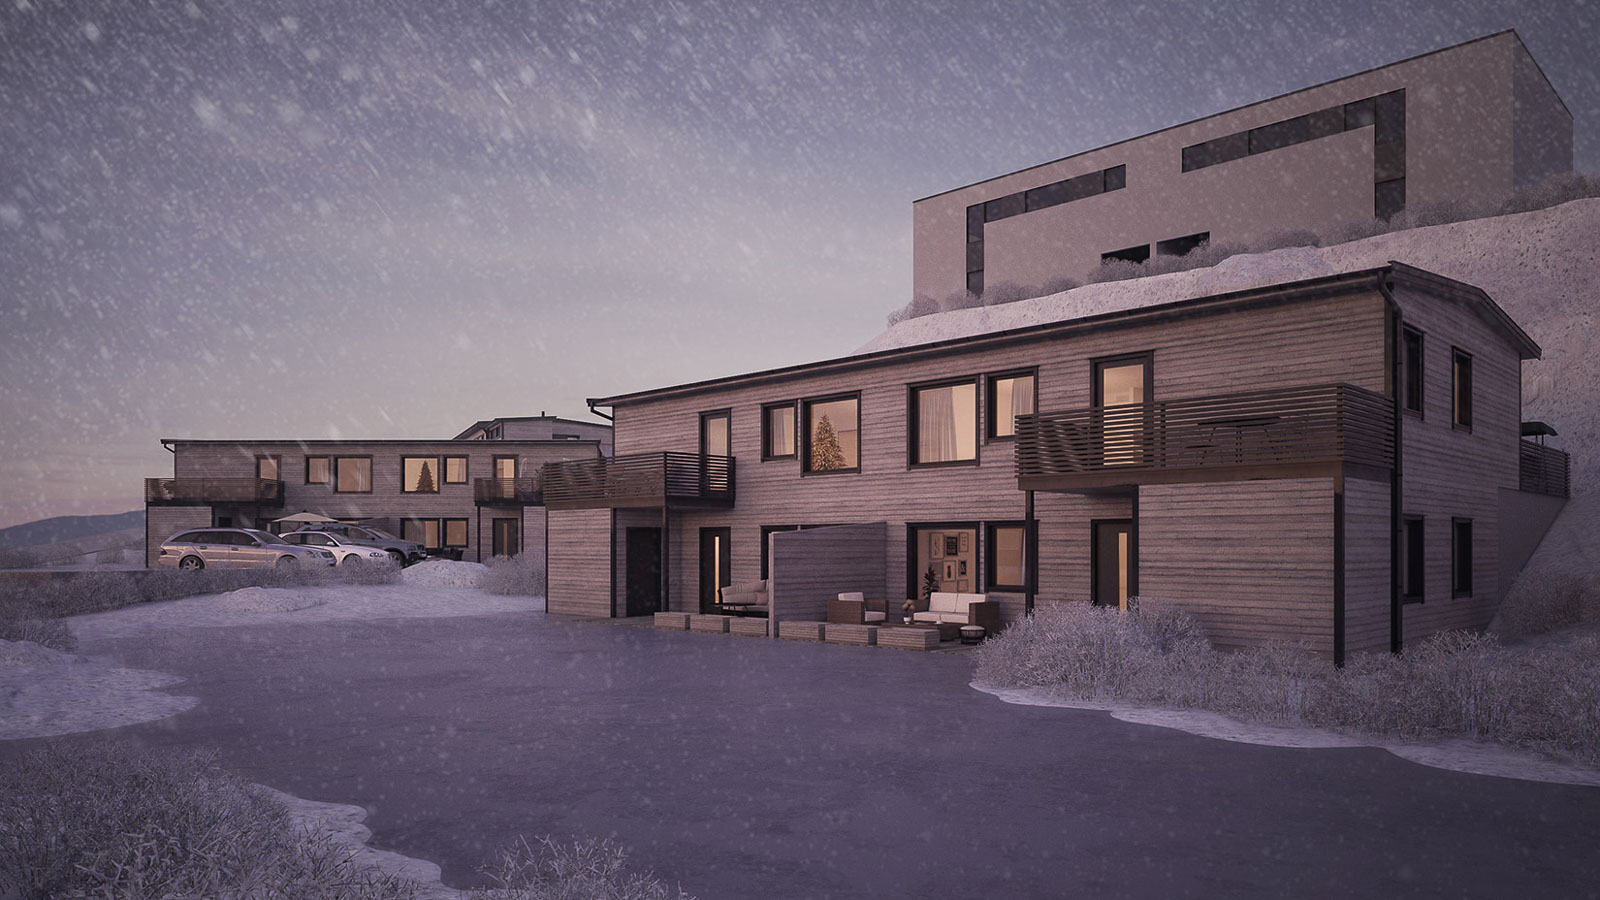 Housing development in Øygarden